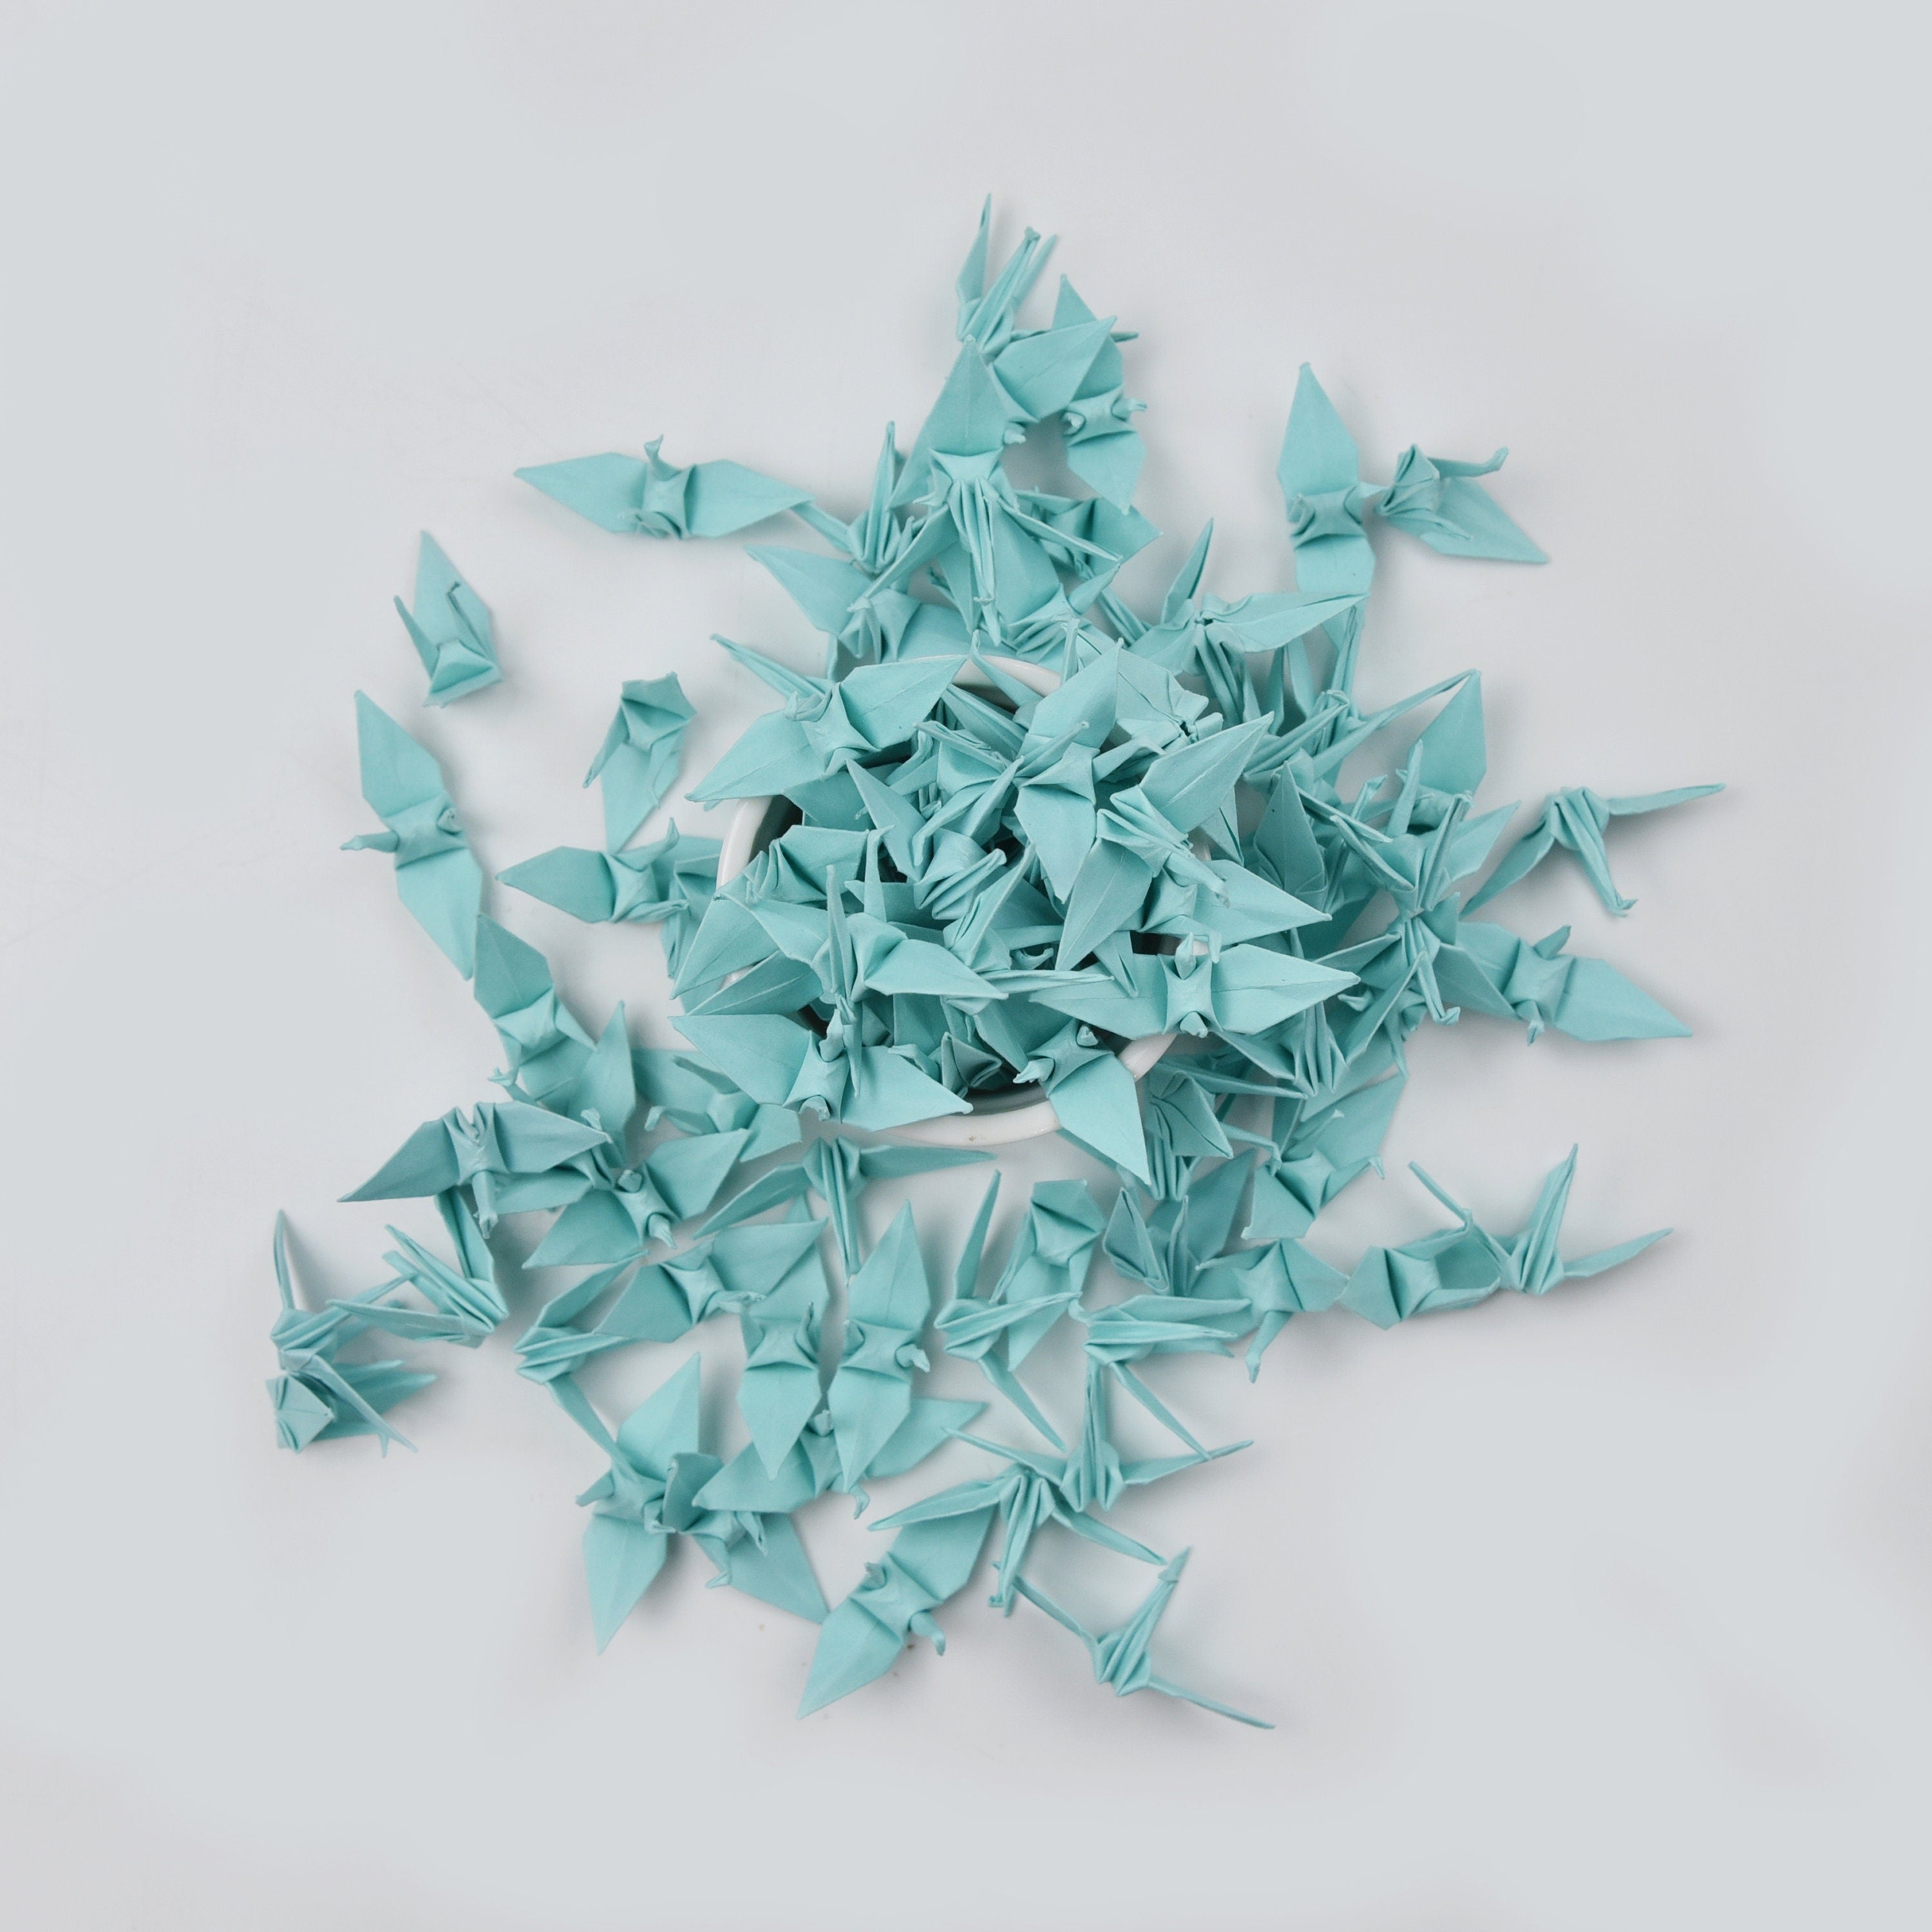 100 Grullas de papel de origami - Verde menta - 3,81 cm (1,5 pulgadas) - para decoración de bodas, adornos y arte